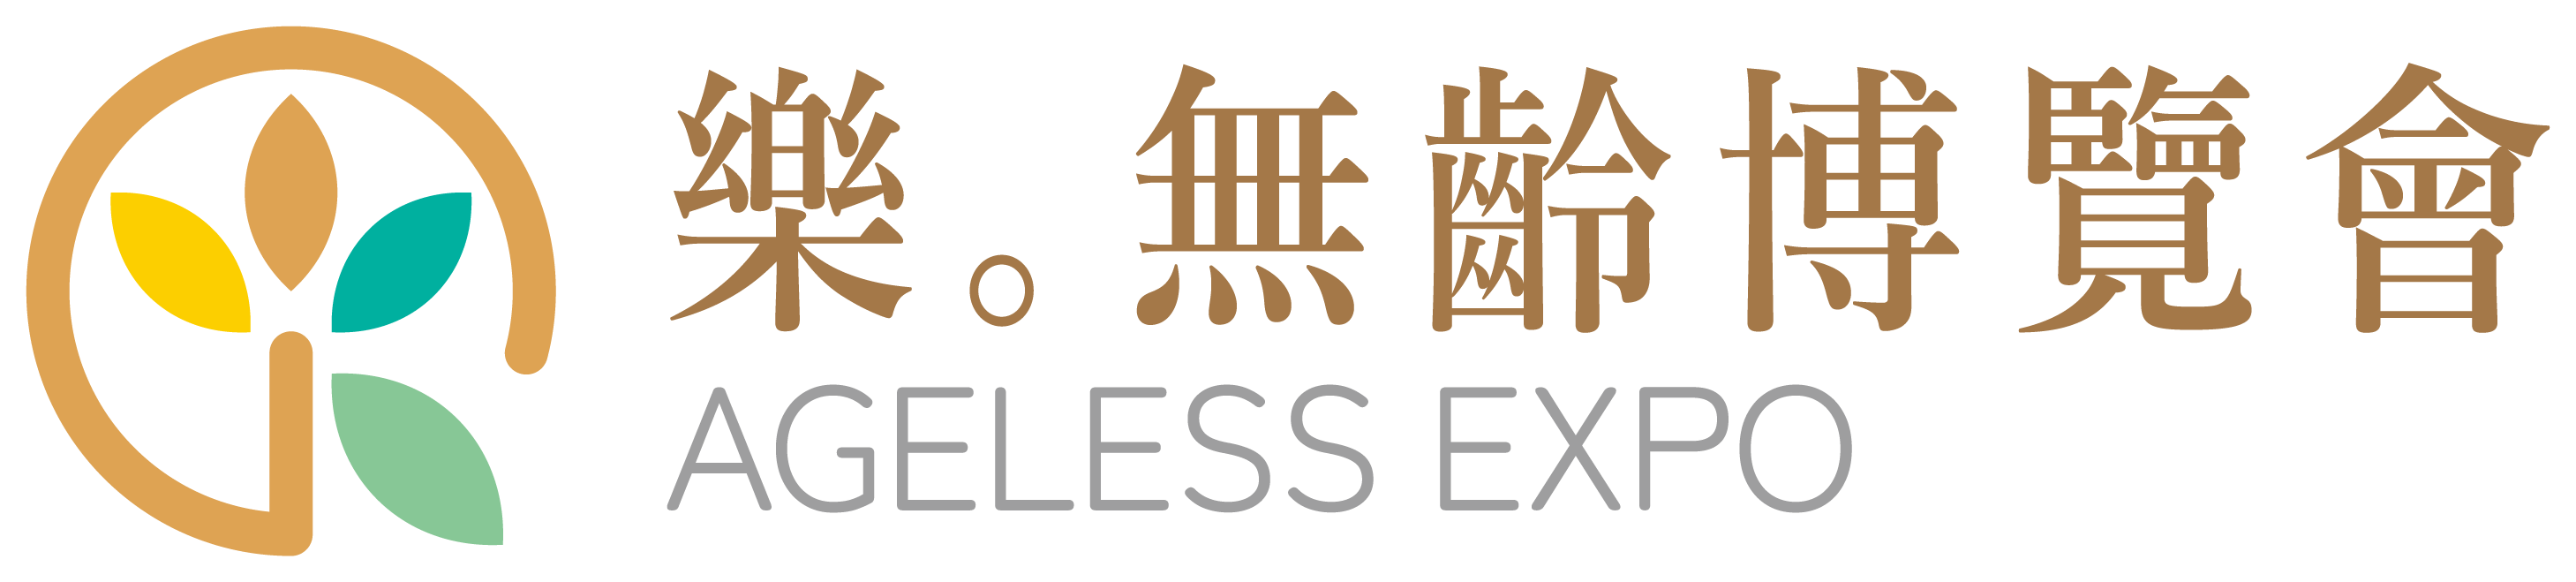 中國臺灣國際亞洲老年人設施展覽會logo